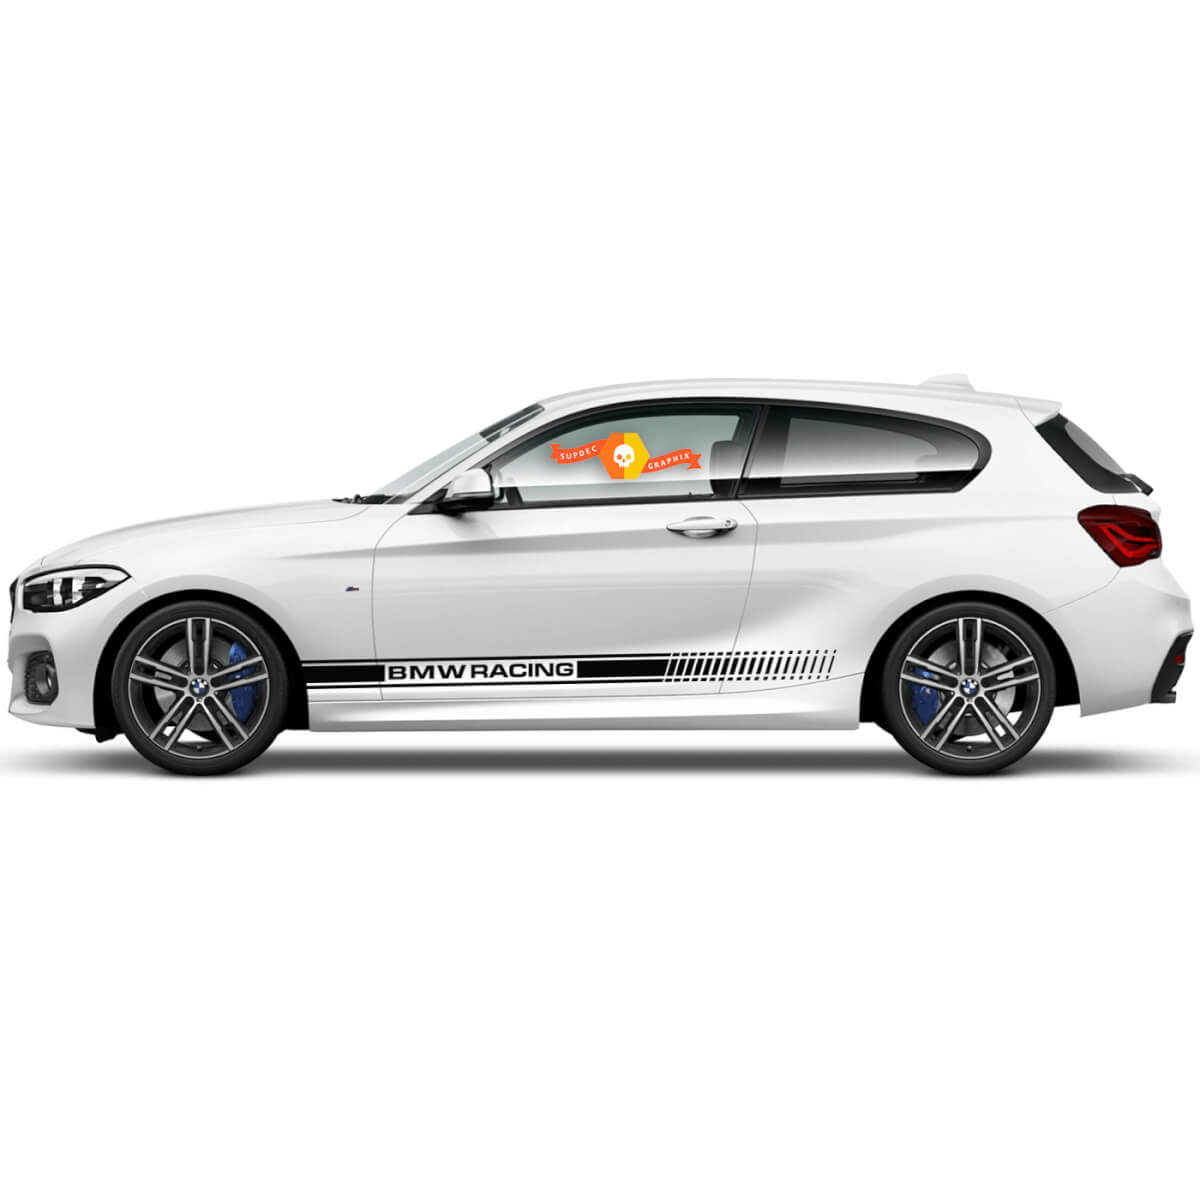 Paio di decalcomanie in vinile Autoadesivi grafici Pannello rocker laterale BMW Series 1 Series 2015 Racing